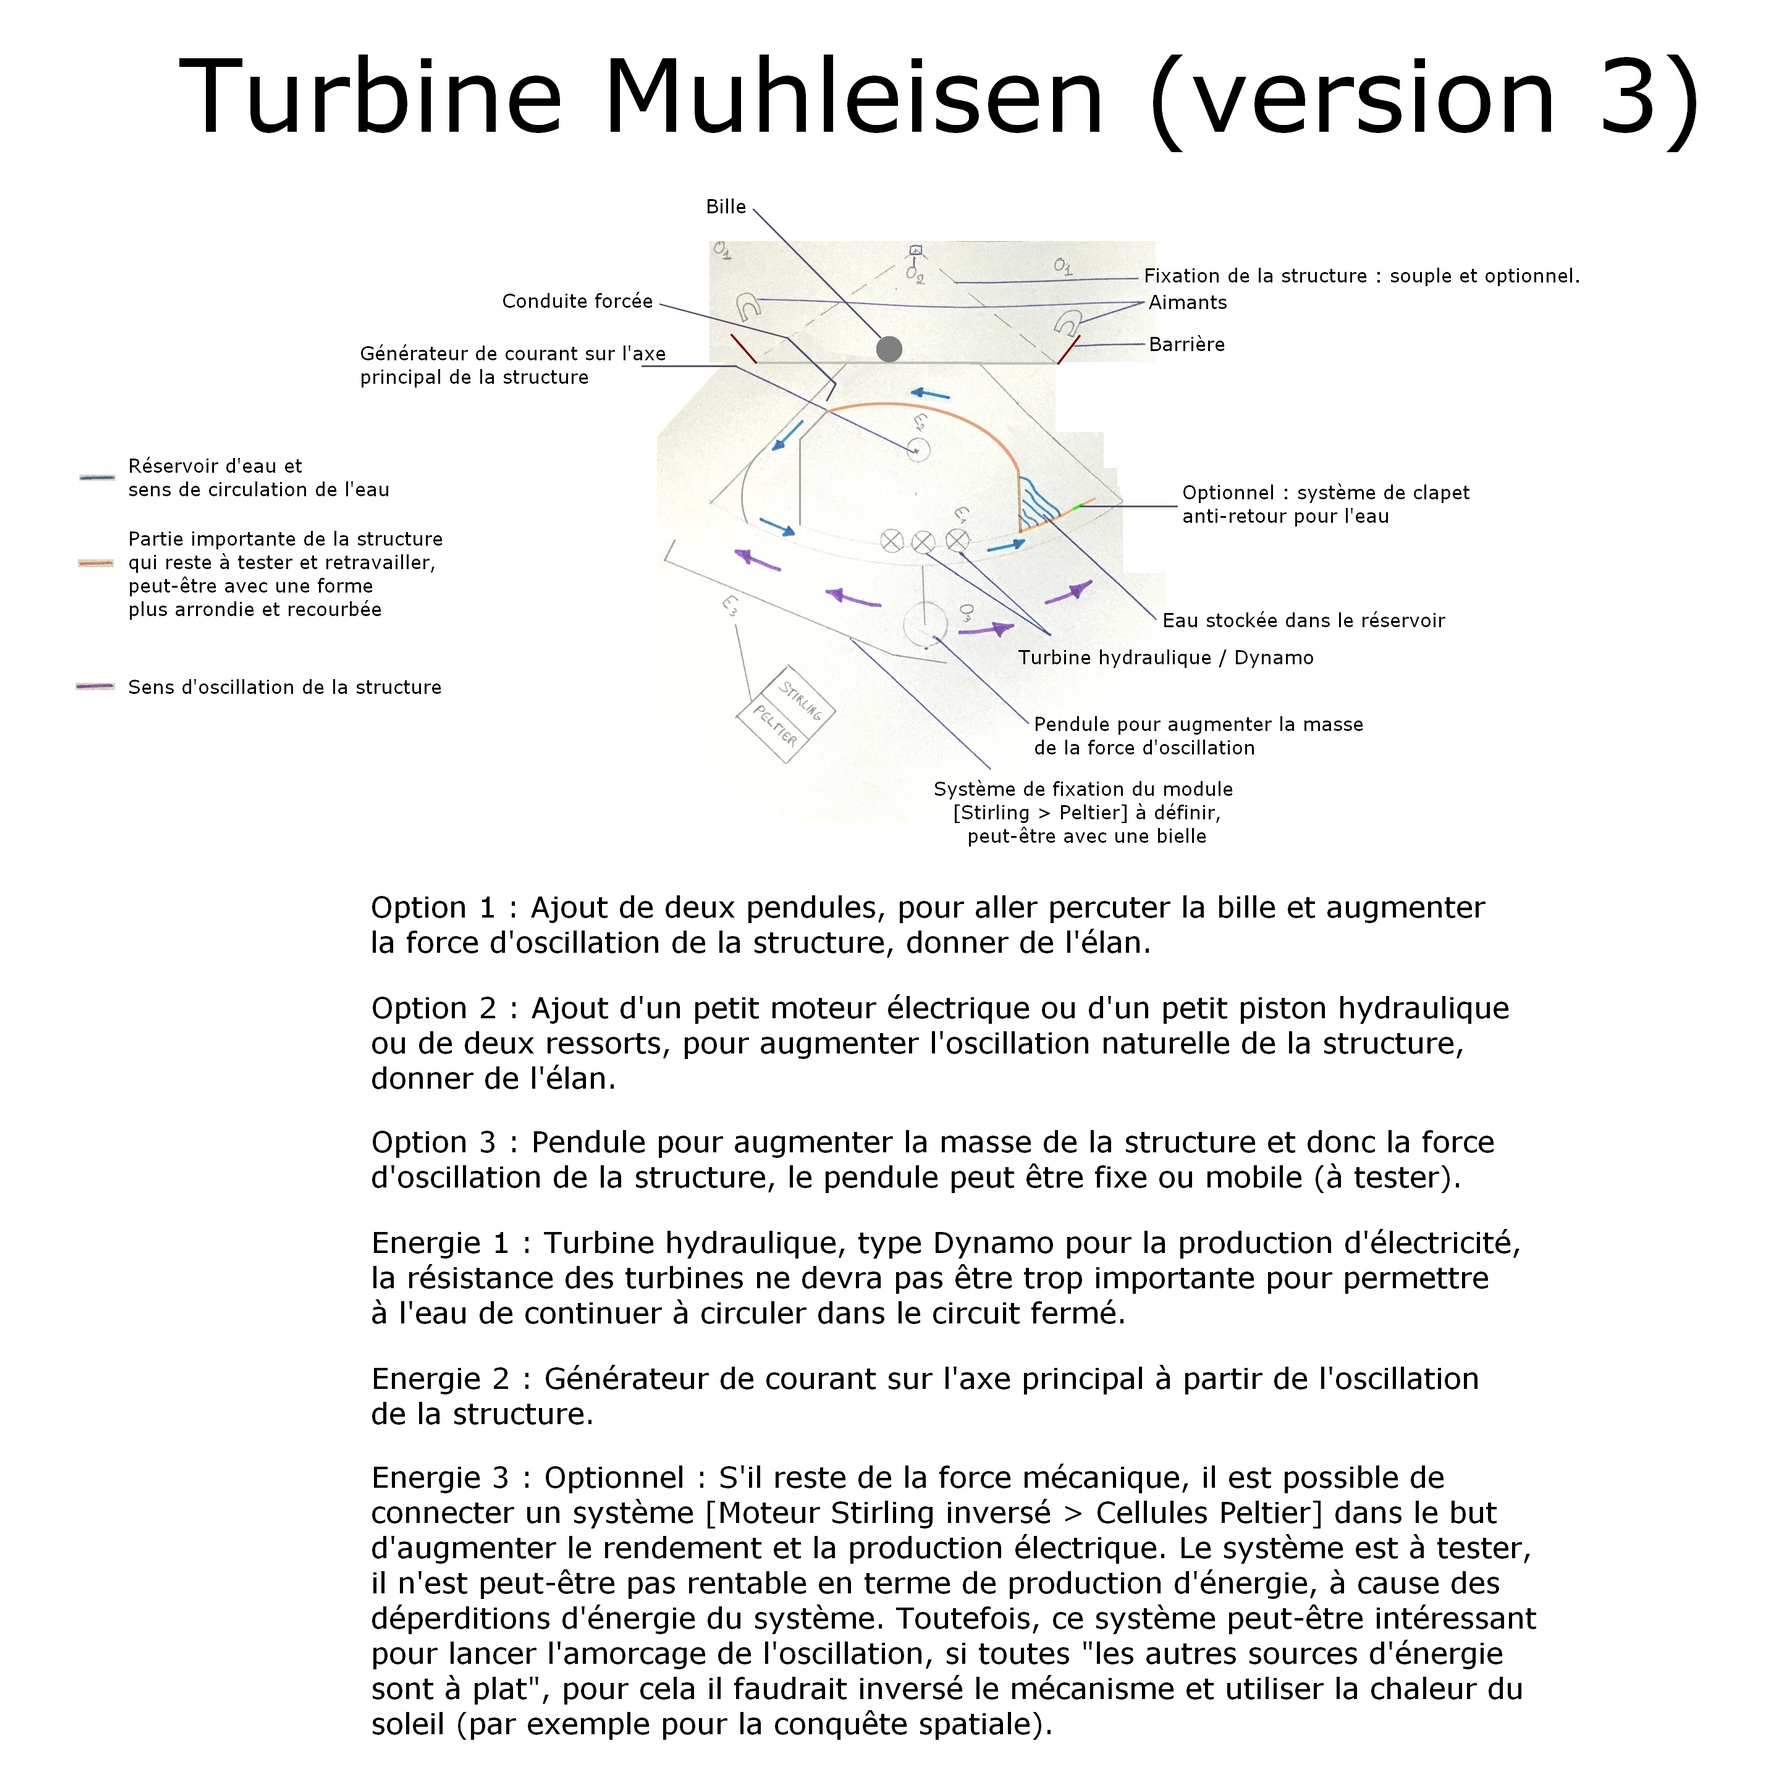 La Turbine Muhleisen troisième version